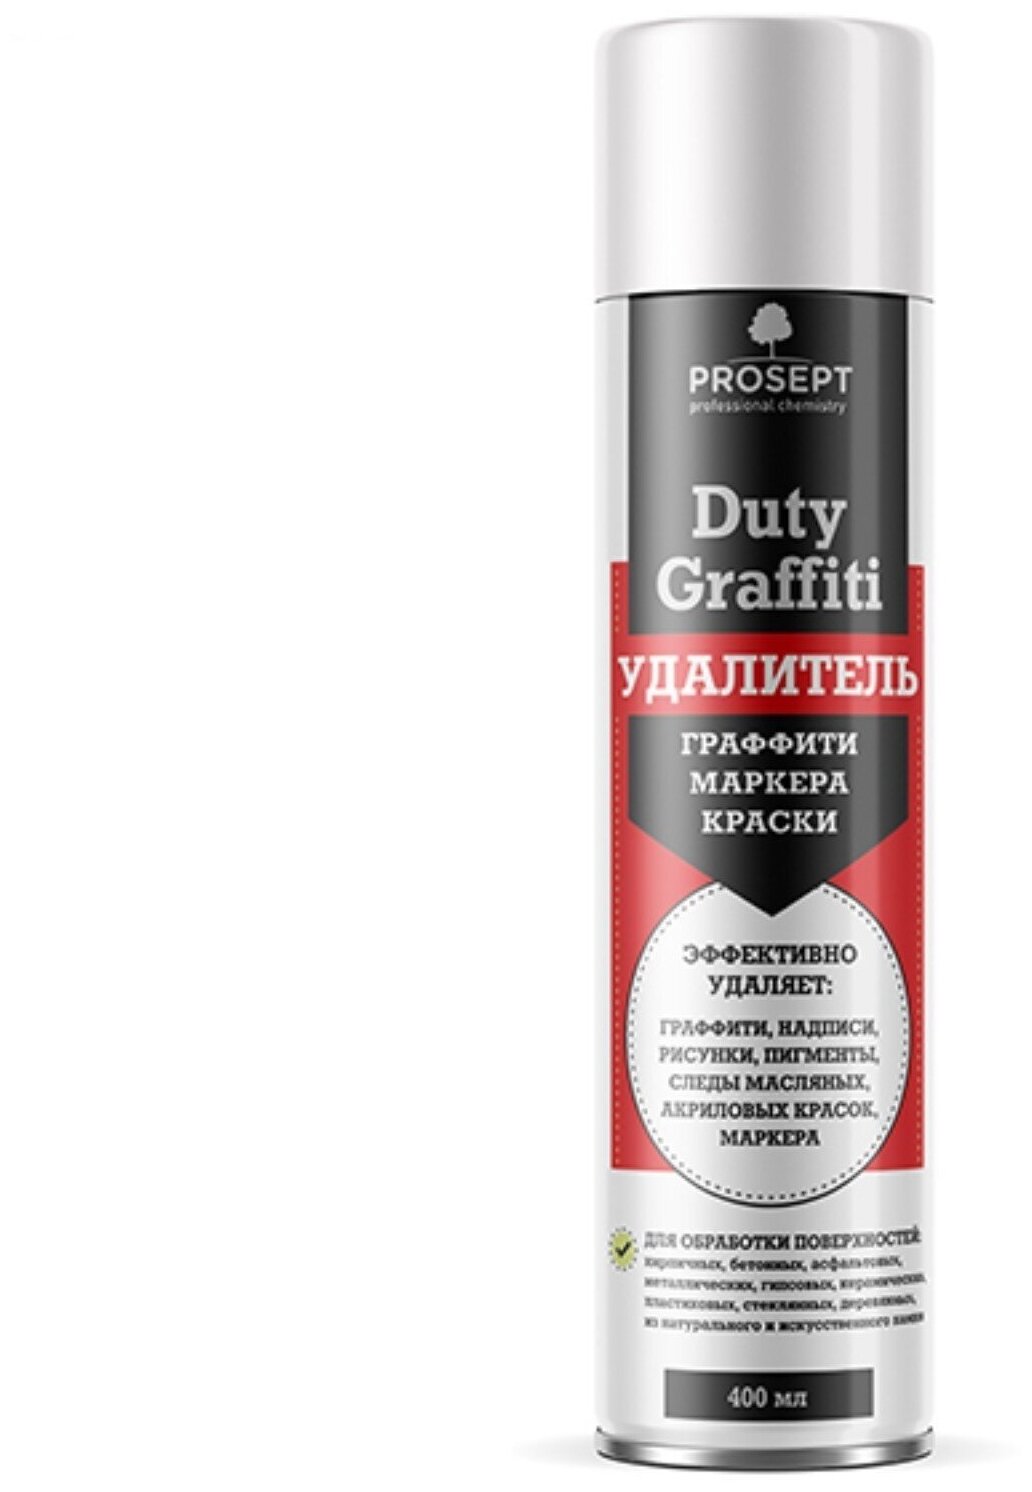 Средство для удаления граффити маркера краски Duty Graffiti готовое к применению 04 л